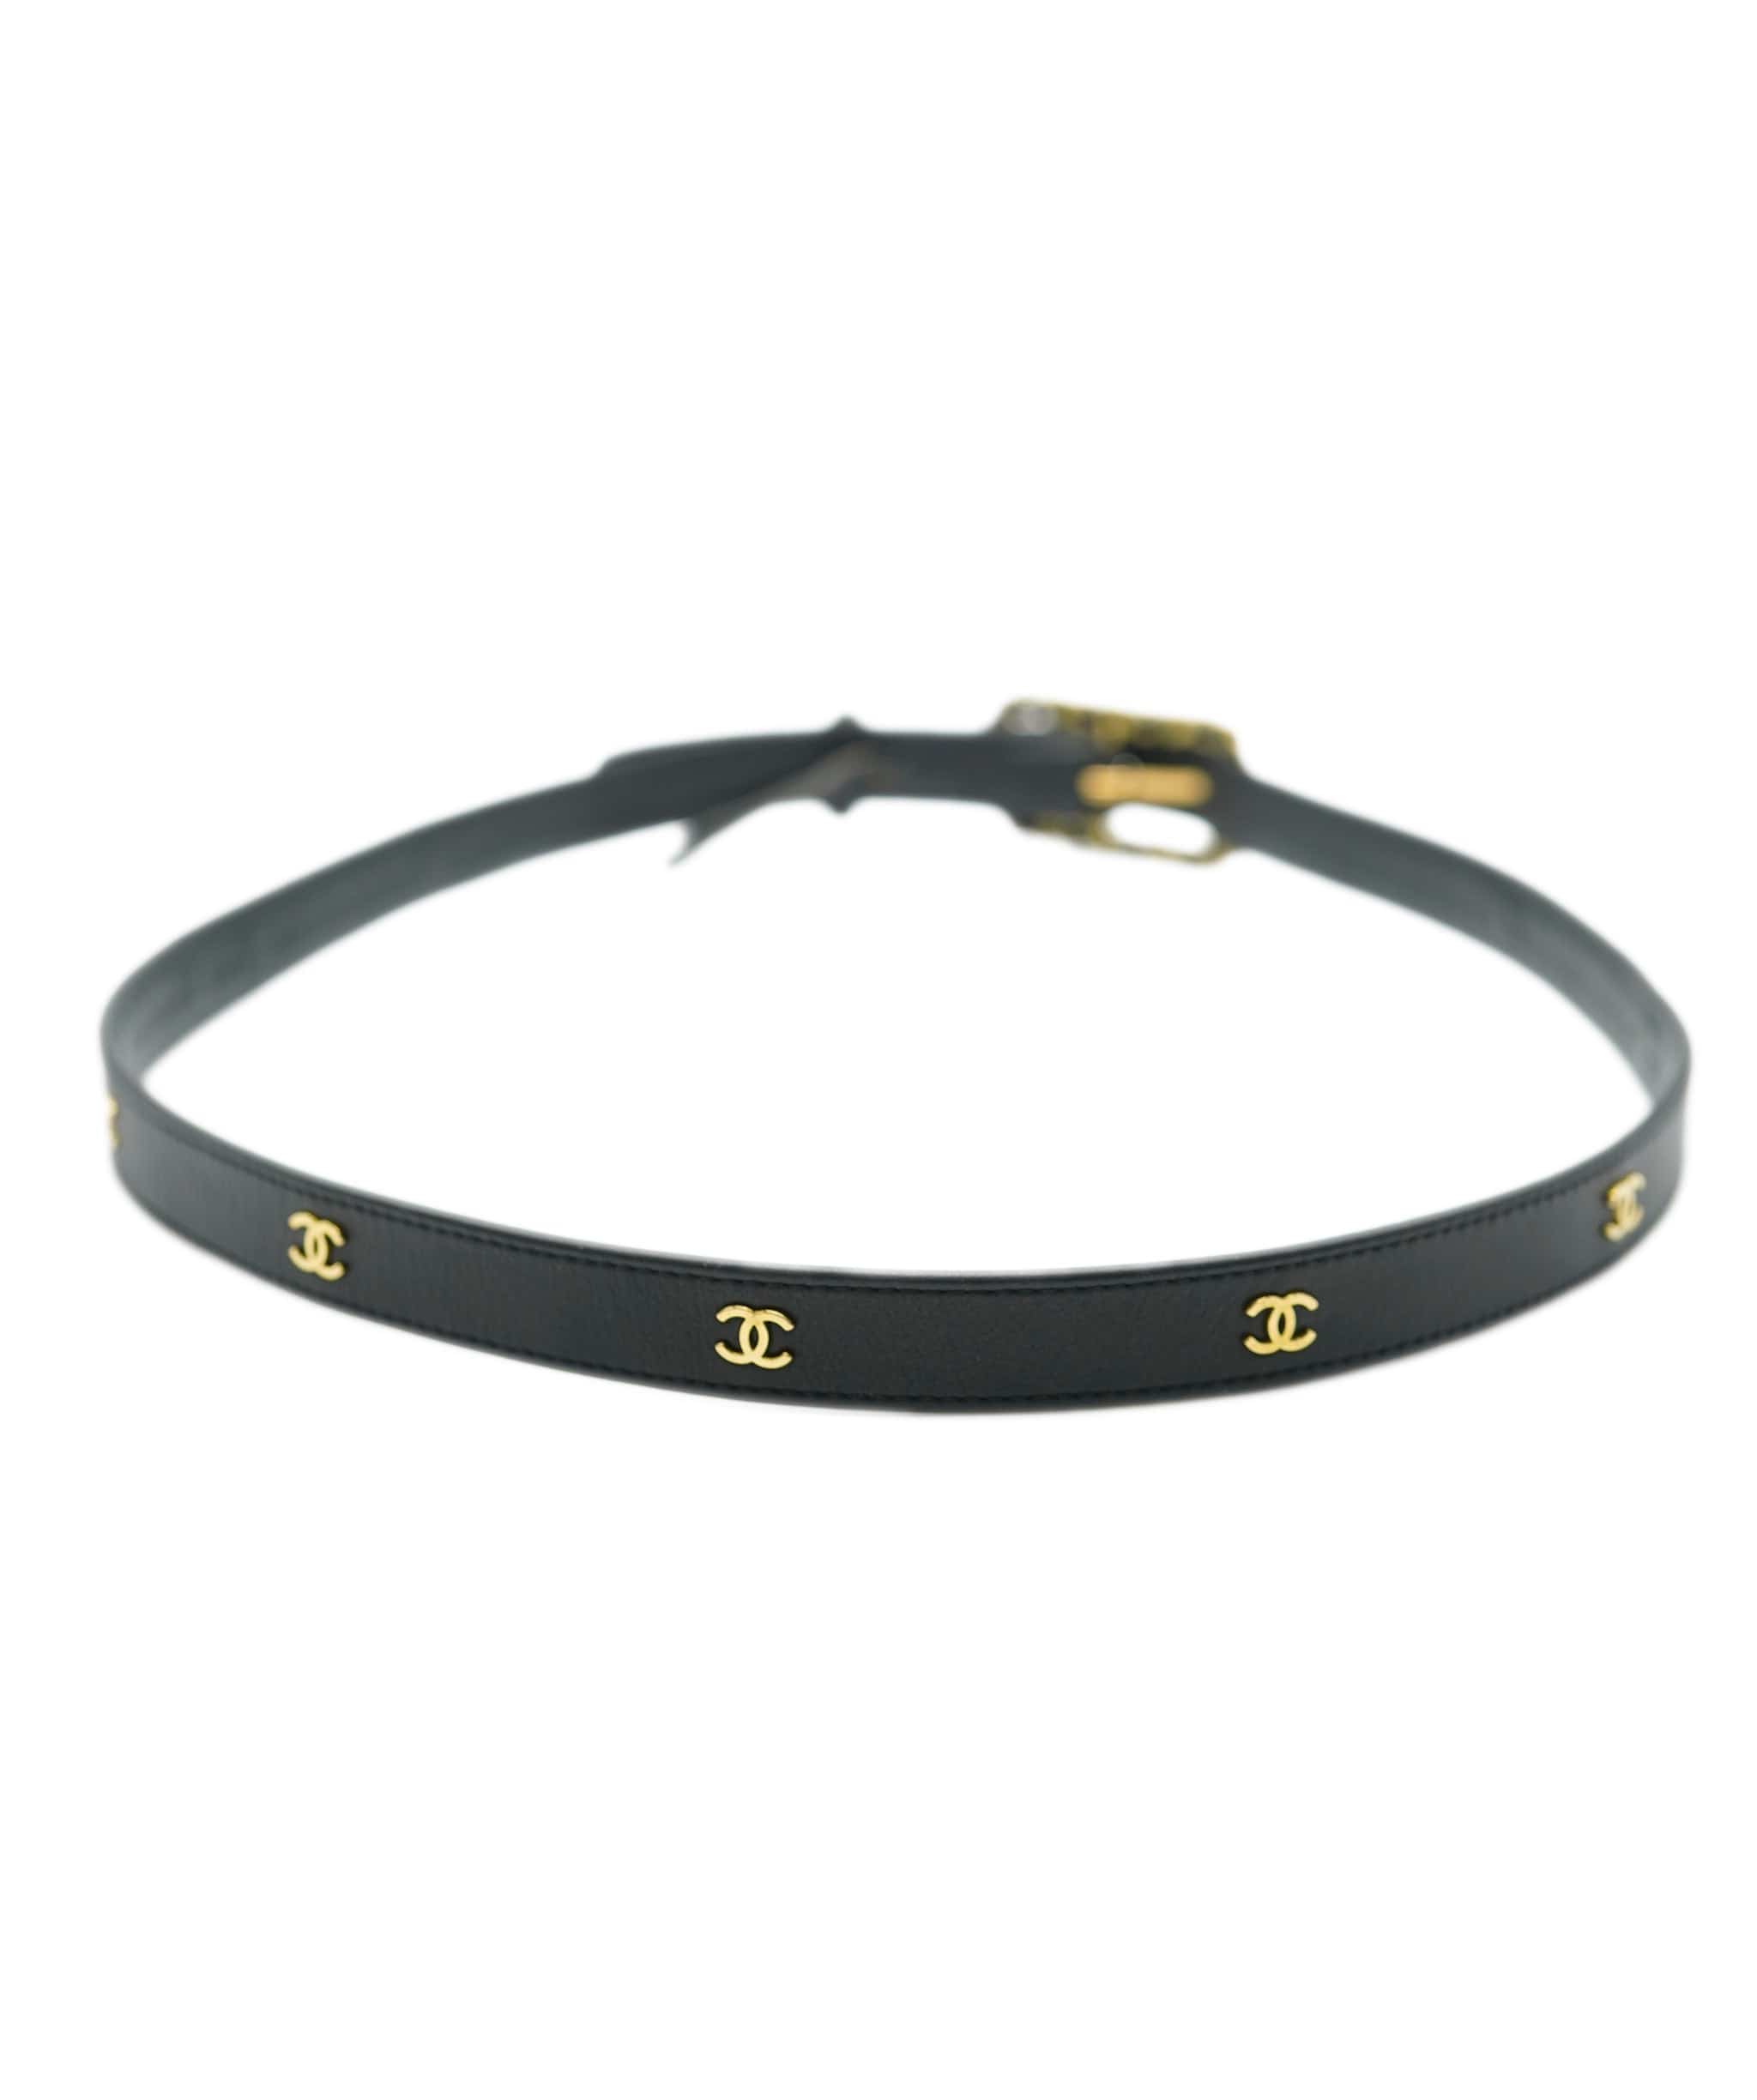 Chanel Chanel CC Leather Belt Black Gold ASL10438